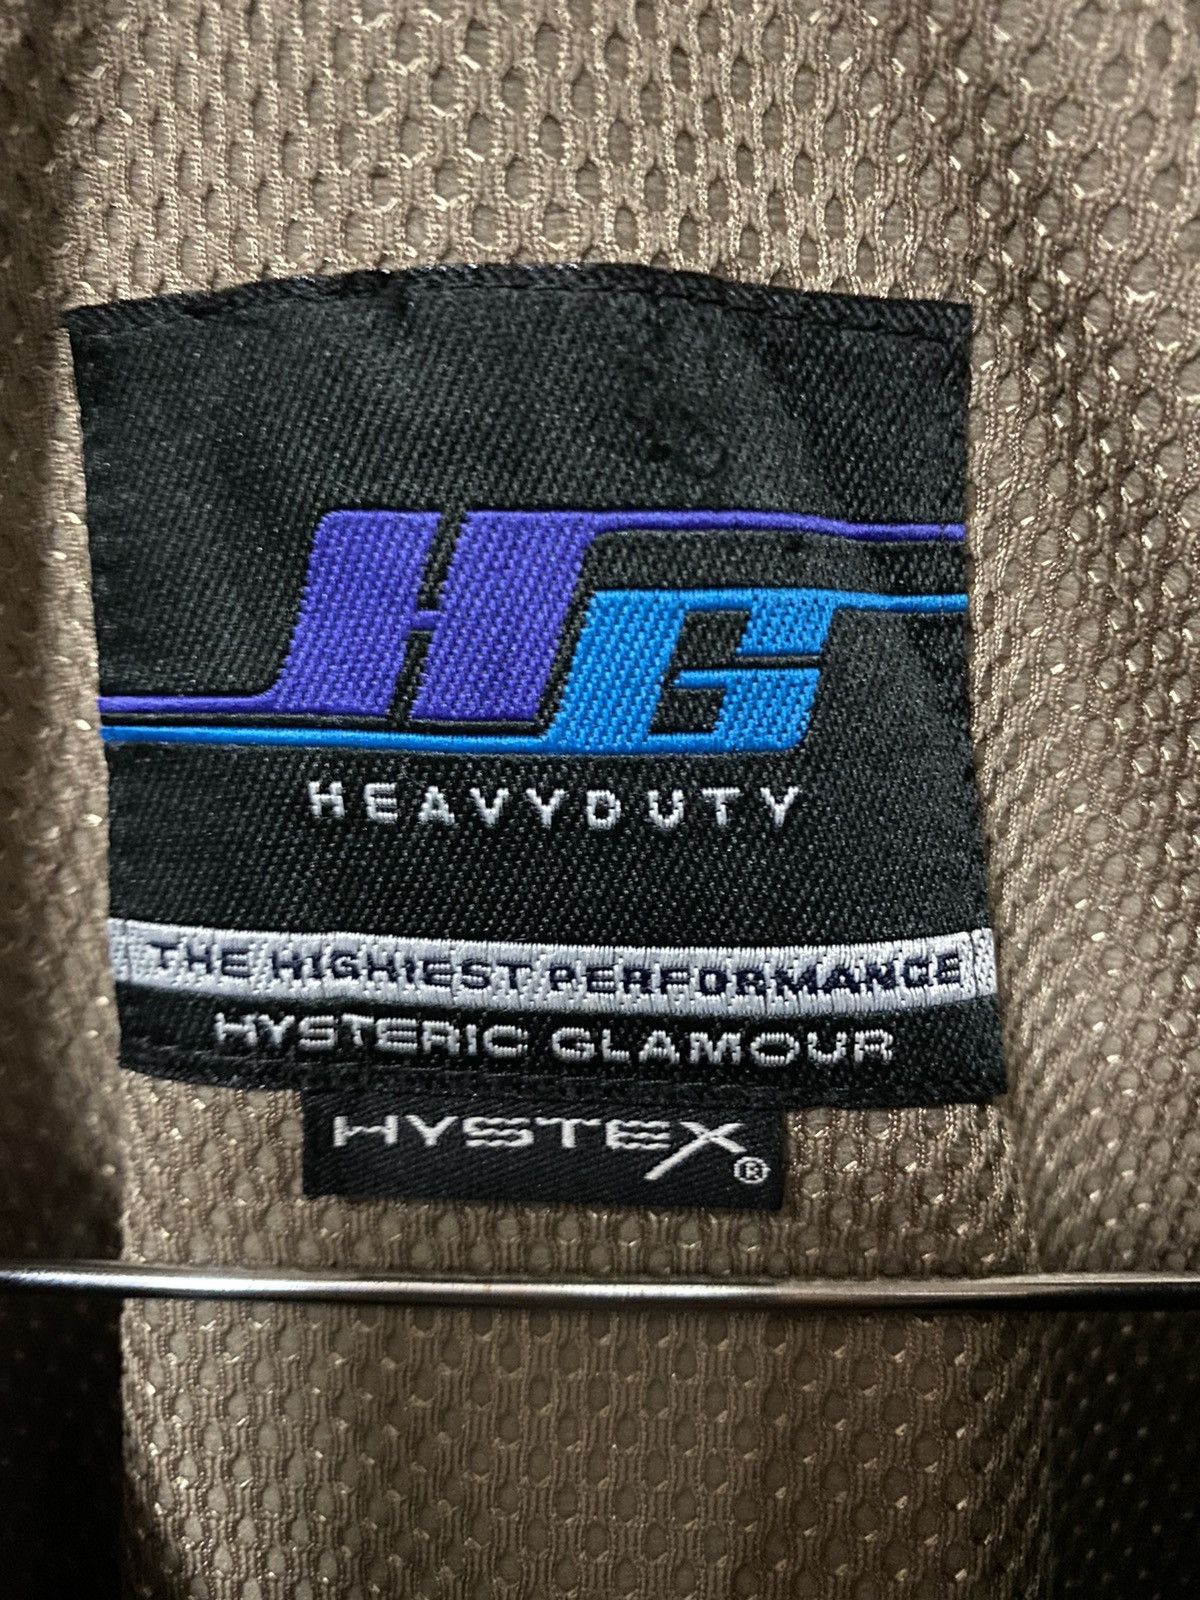 Hysteric Glamour Heavyduty Hystex Works Jacket - 10